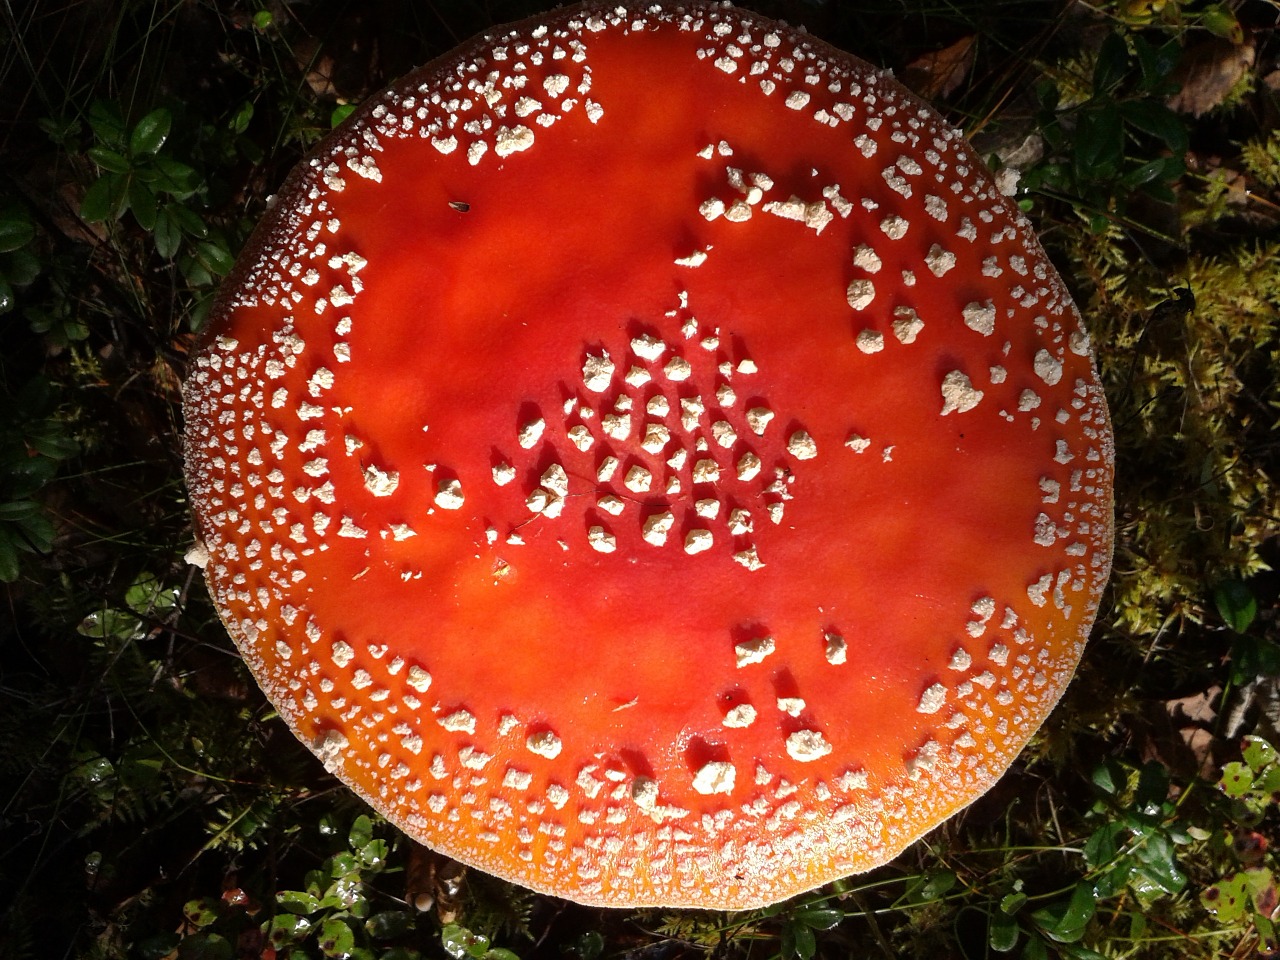 toadstool nature mushroom free photo